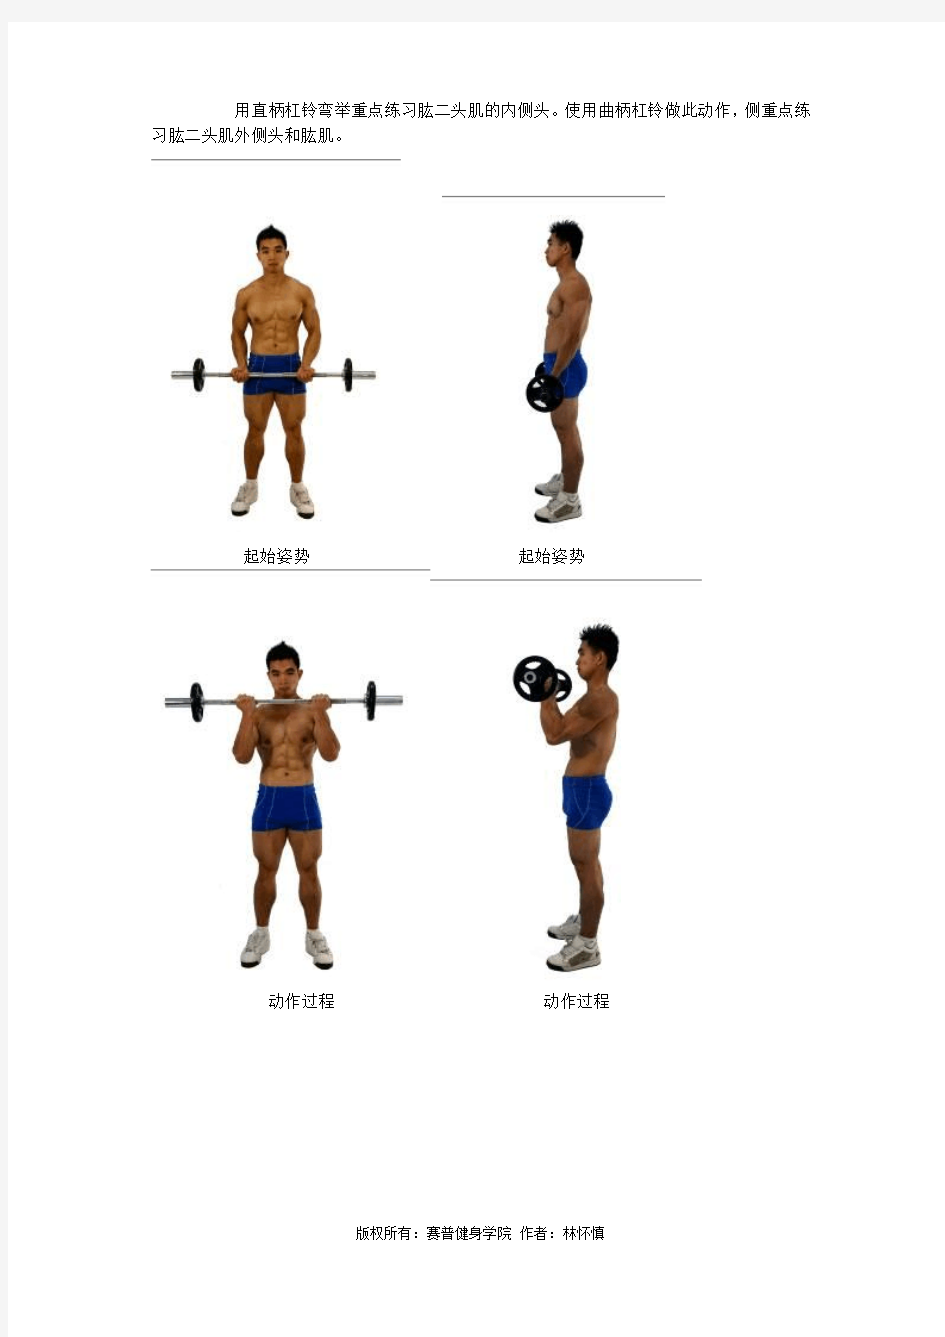 健身教练课程之臂部肌肉的练习方法第一节